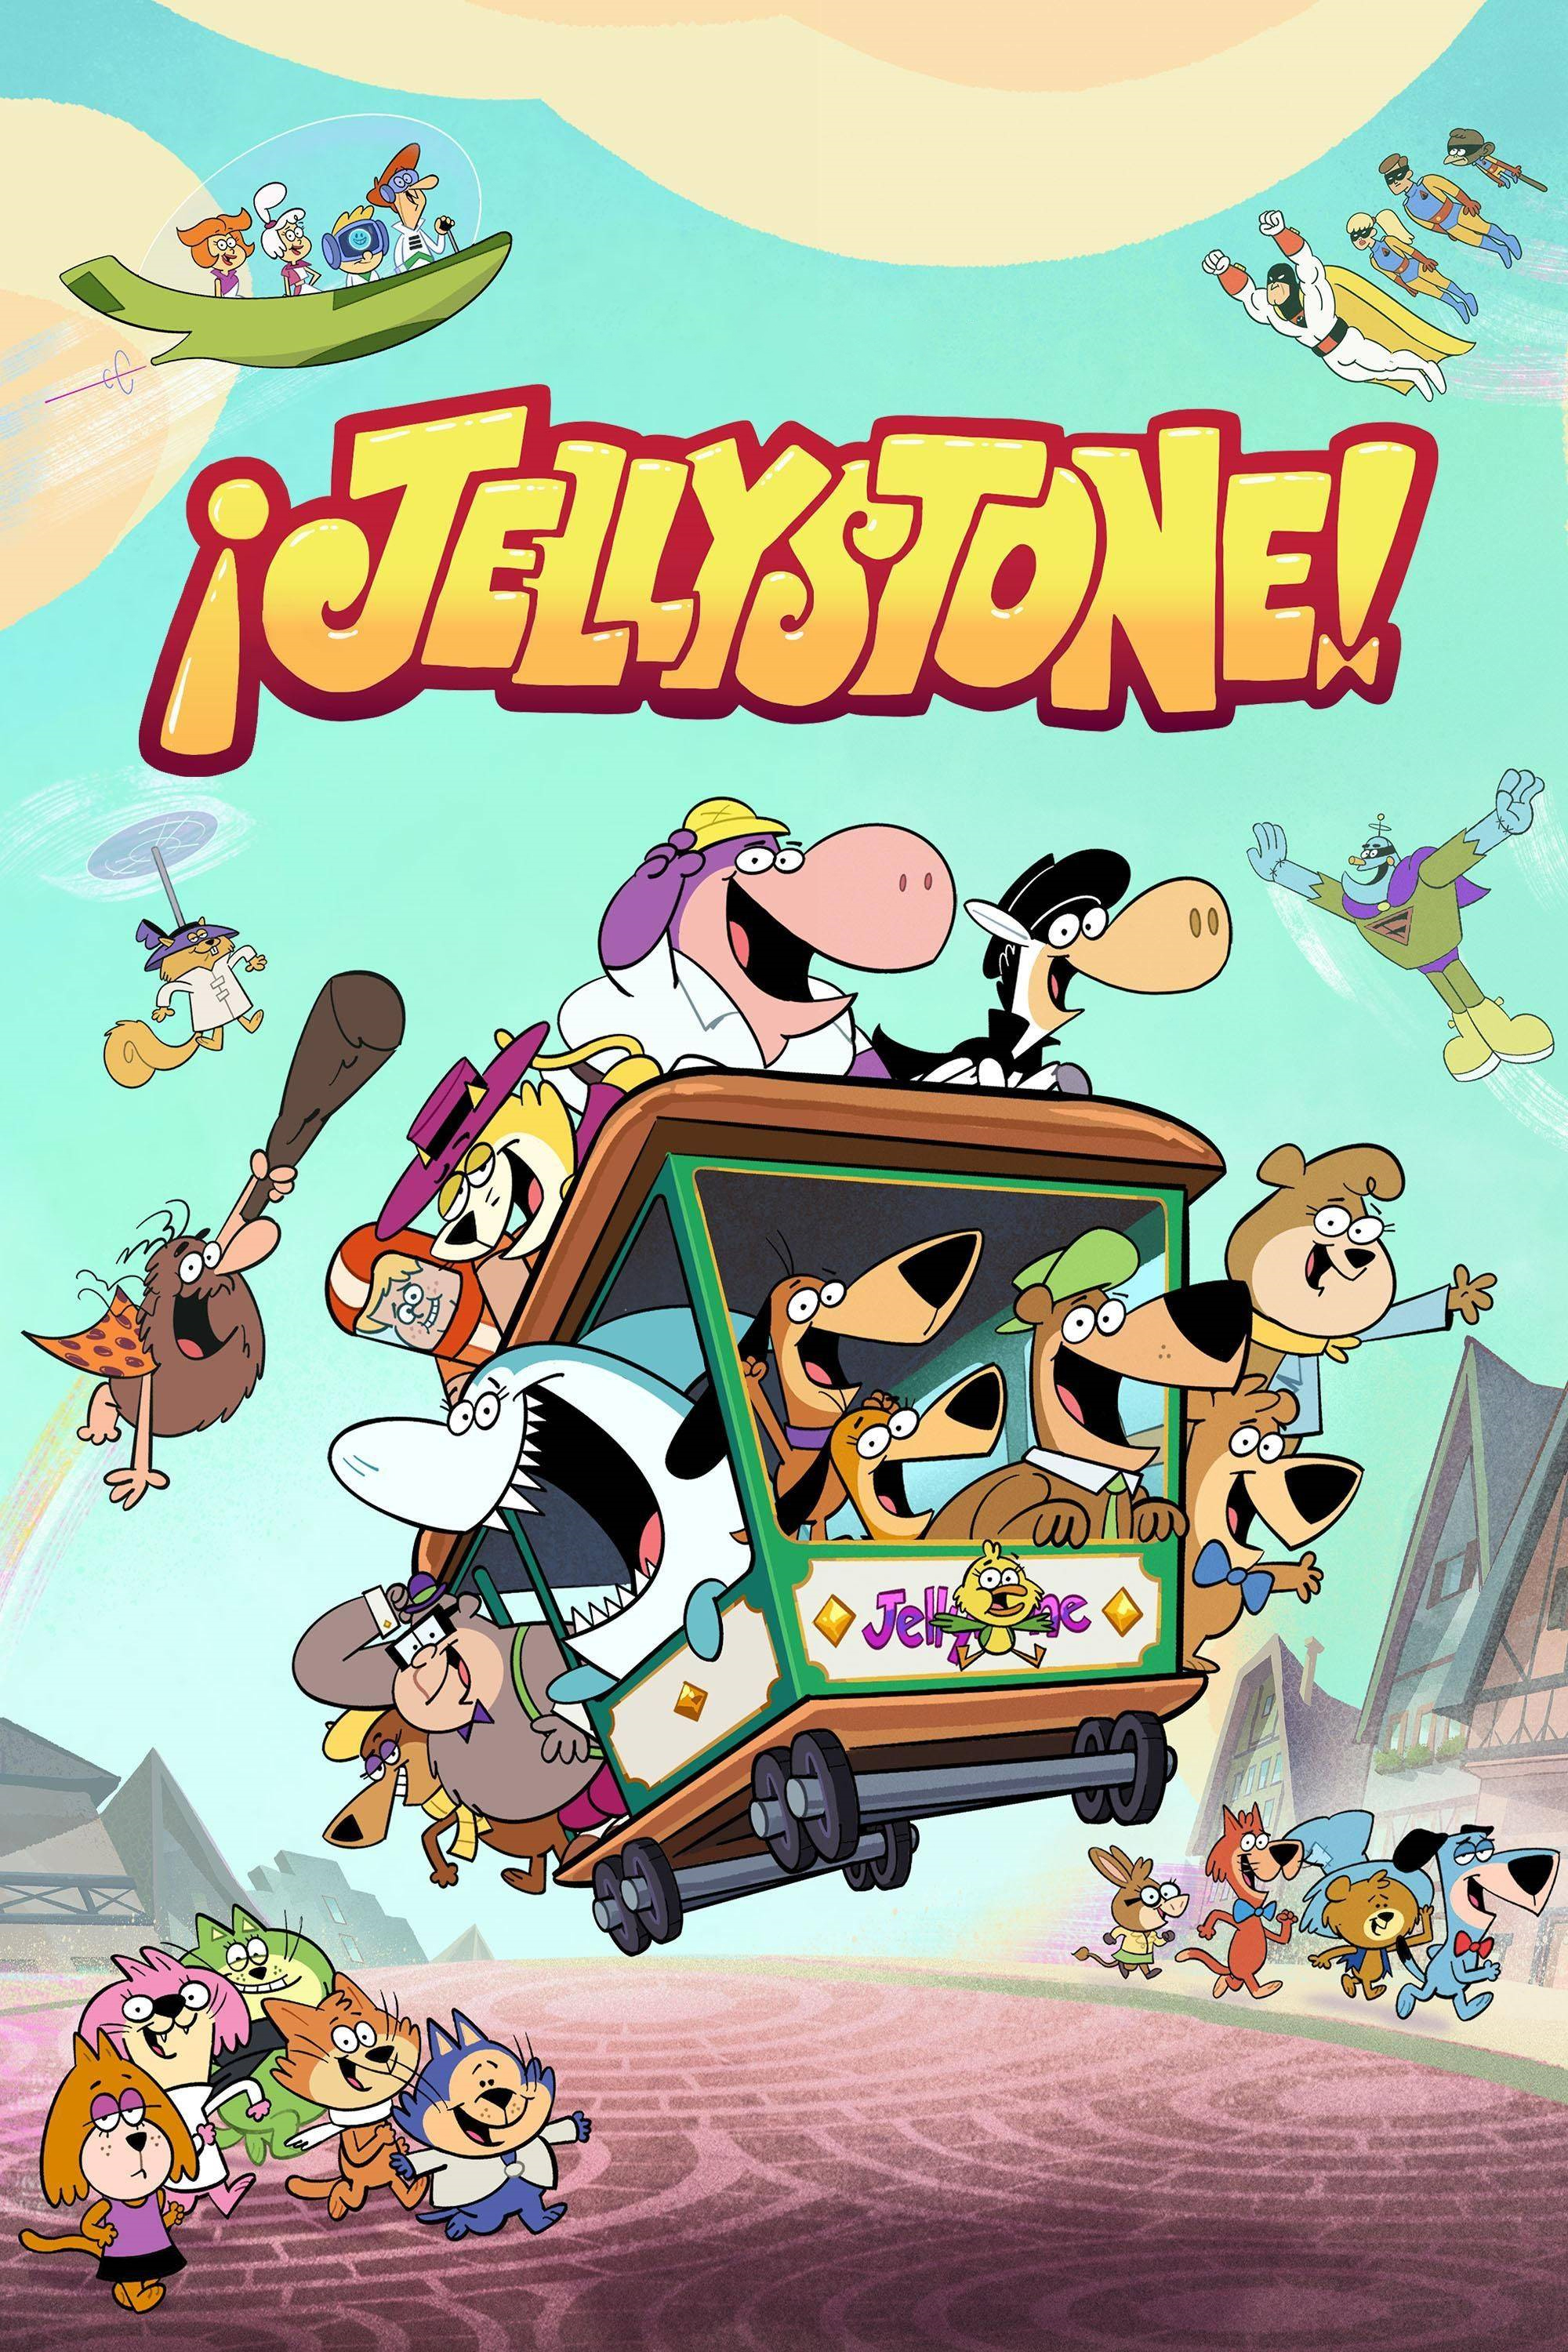 Jellystone! | Doblaje Wiki | Fandom